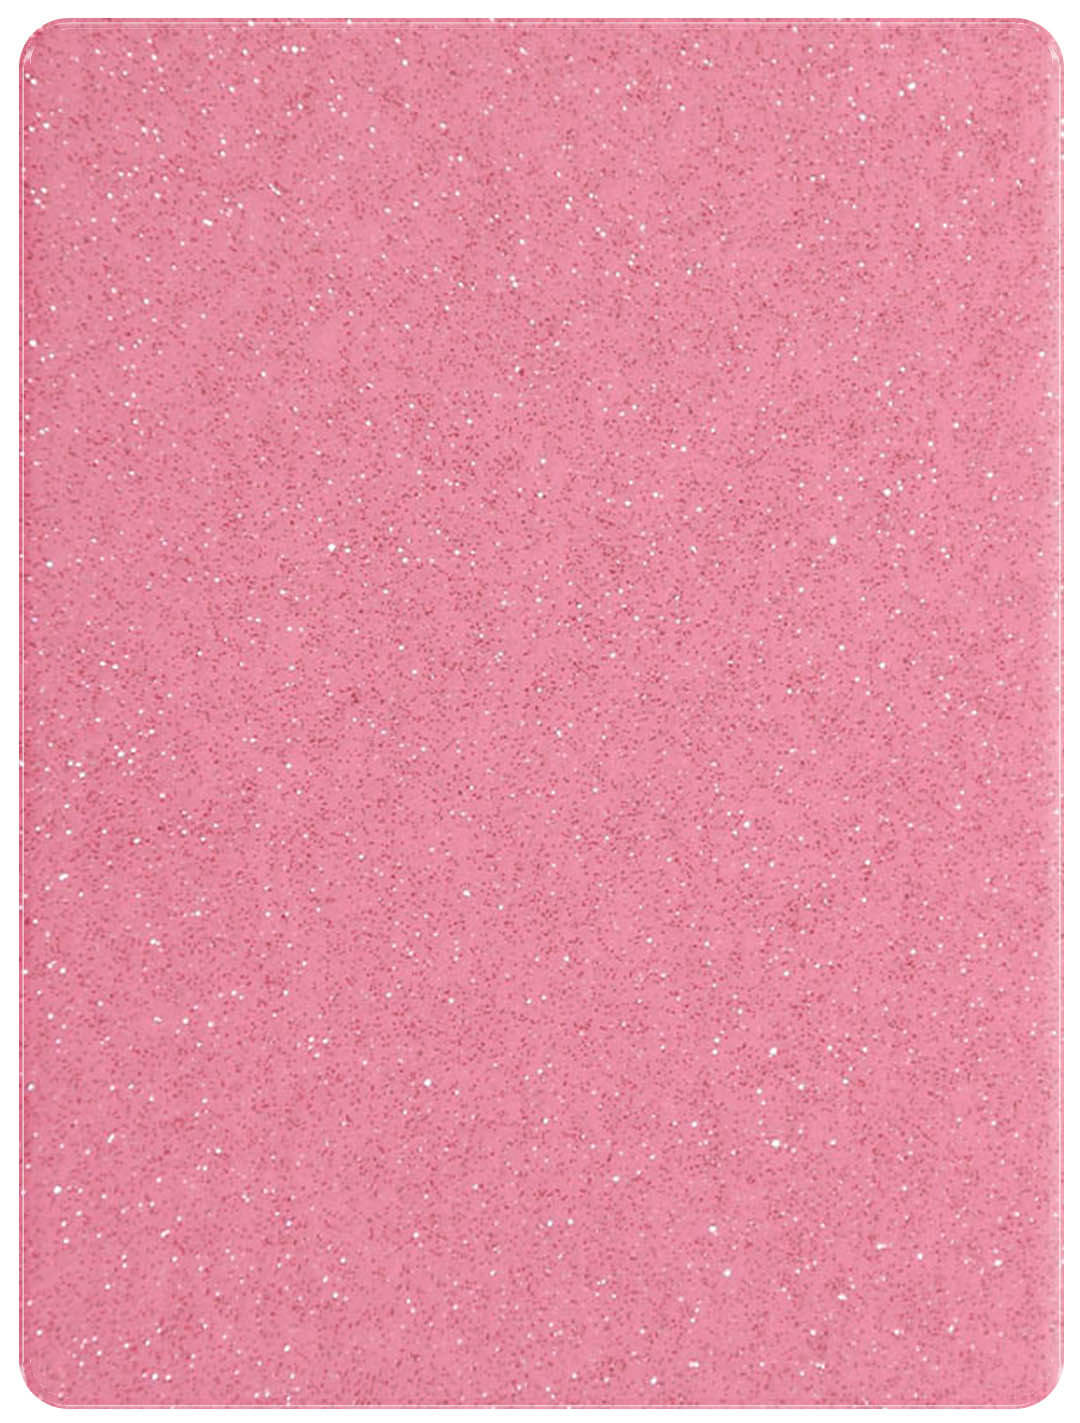 pink fancy glitter acrylic sheet